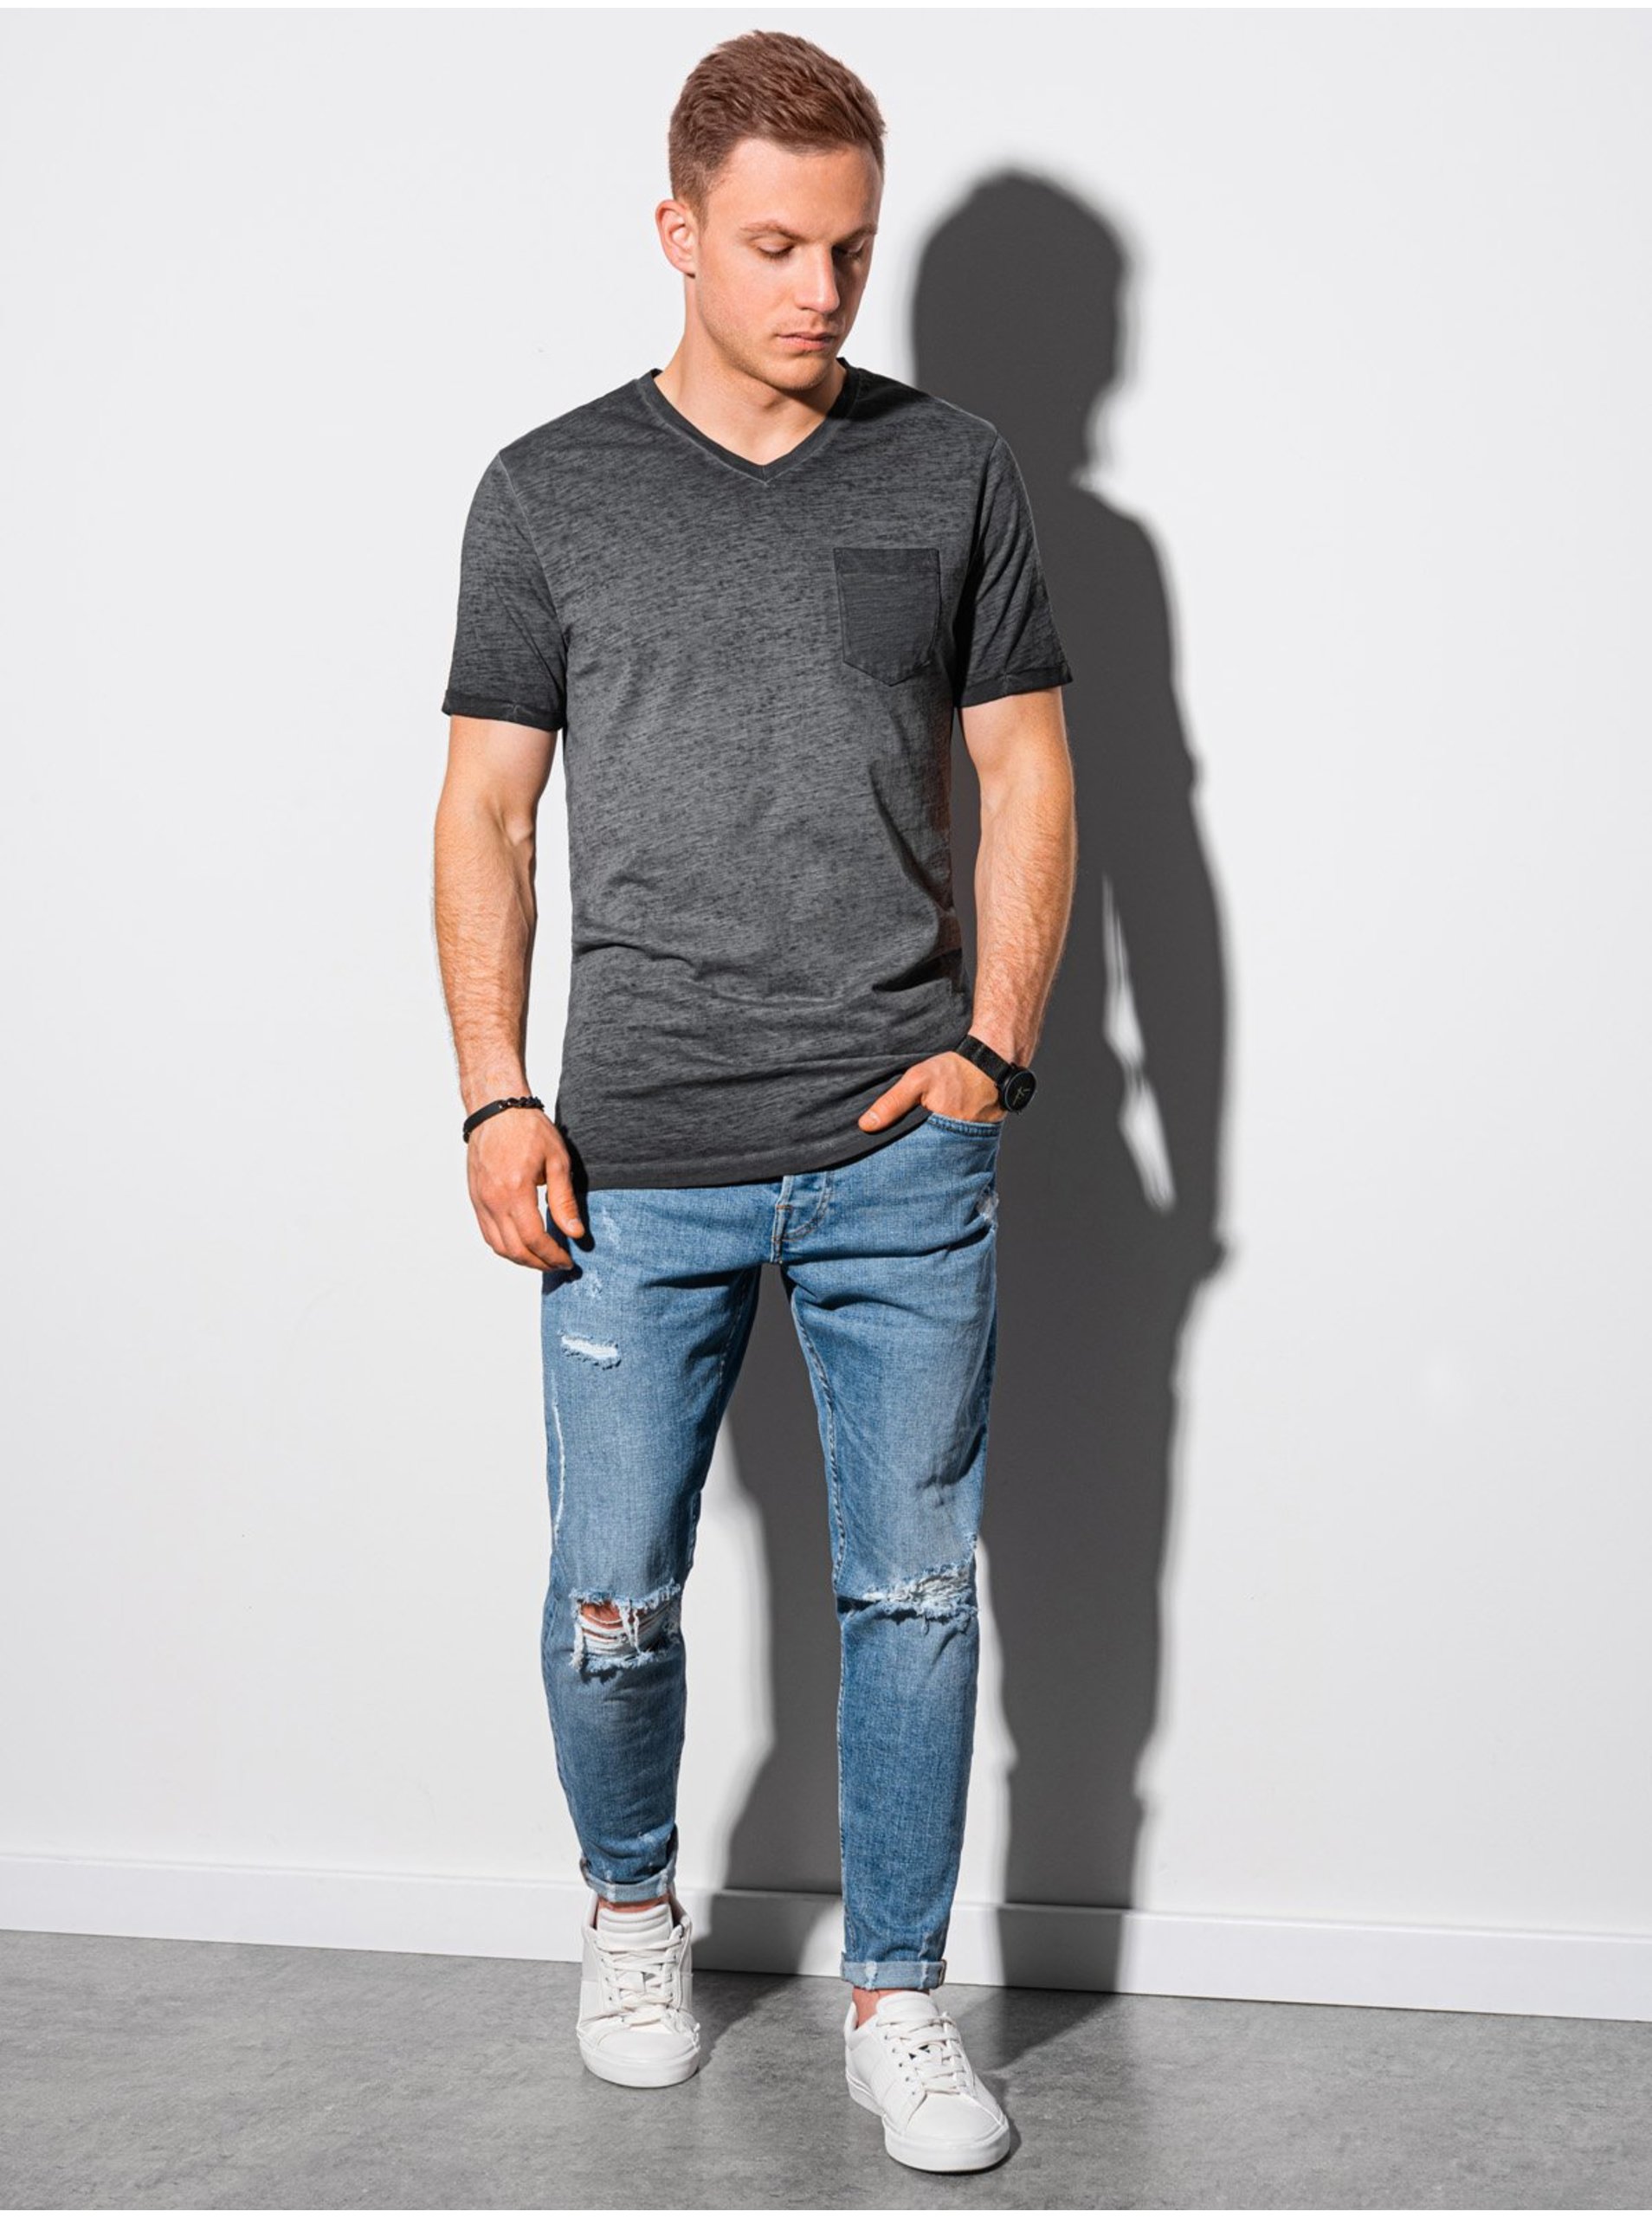 Lacno Čierne pánske tričko bez potlače Ombre Clothing S1388